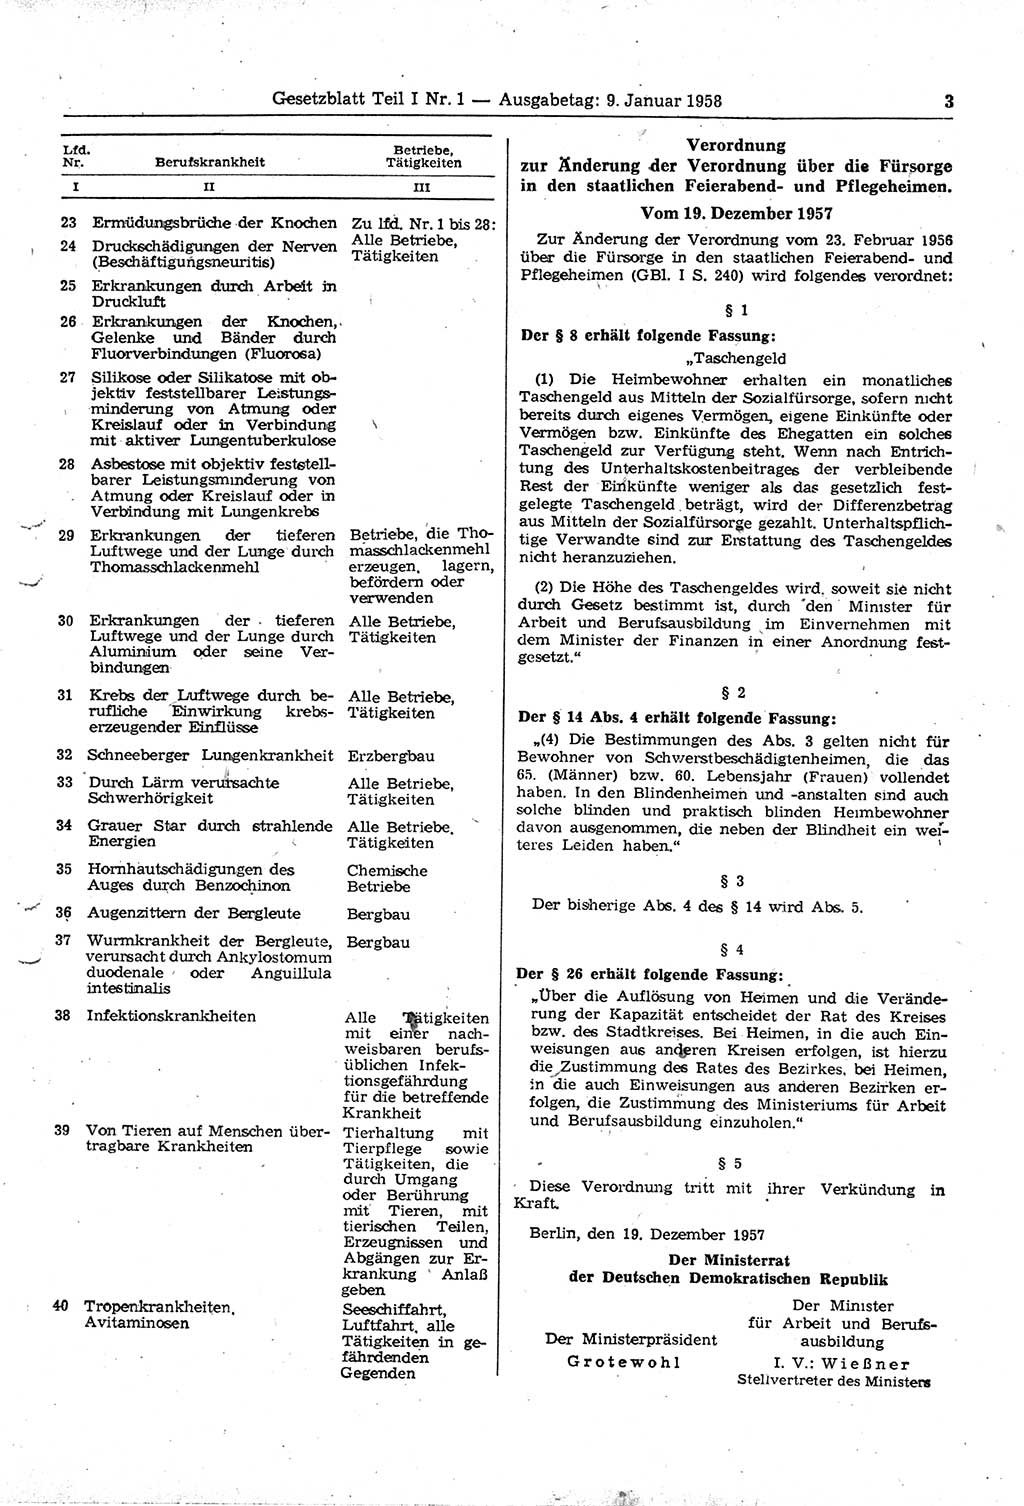 Gesetzblatt (GBl.) der Deutschen Demokratischen Republik (DDR) Teil Ⅰ 1958, Seite 3 (GBl. DDR Ⅰ 1958, S. 3)